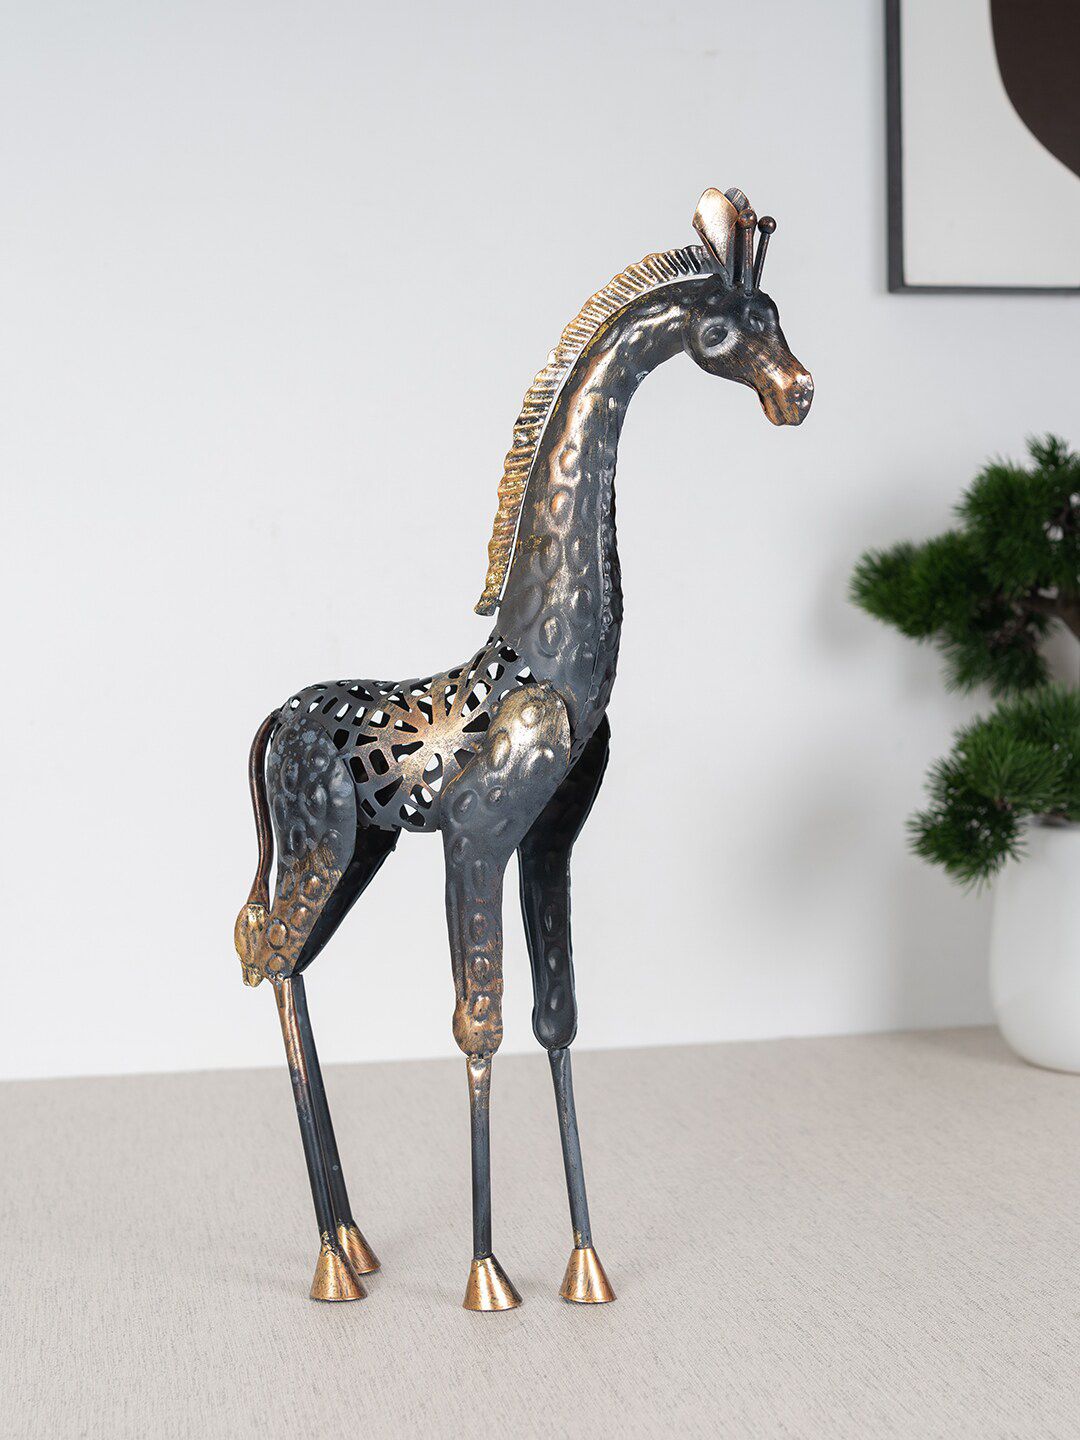 HomeTown Black Metal Mania Roman Giraffe Figurine Price in India